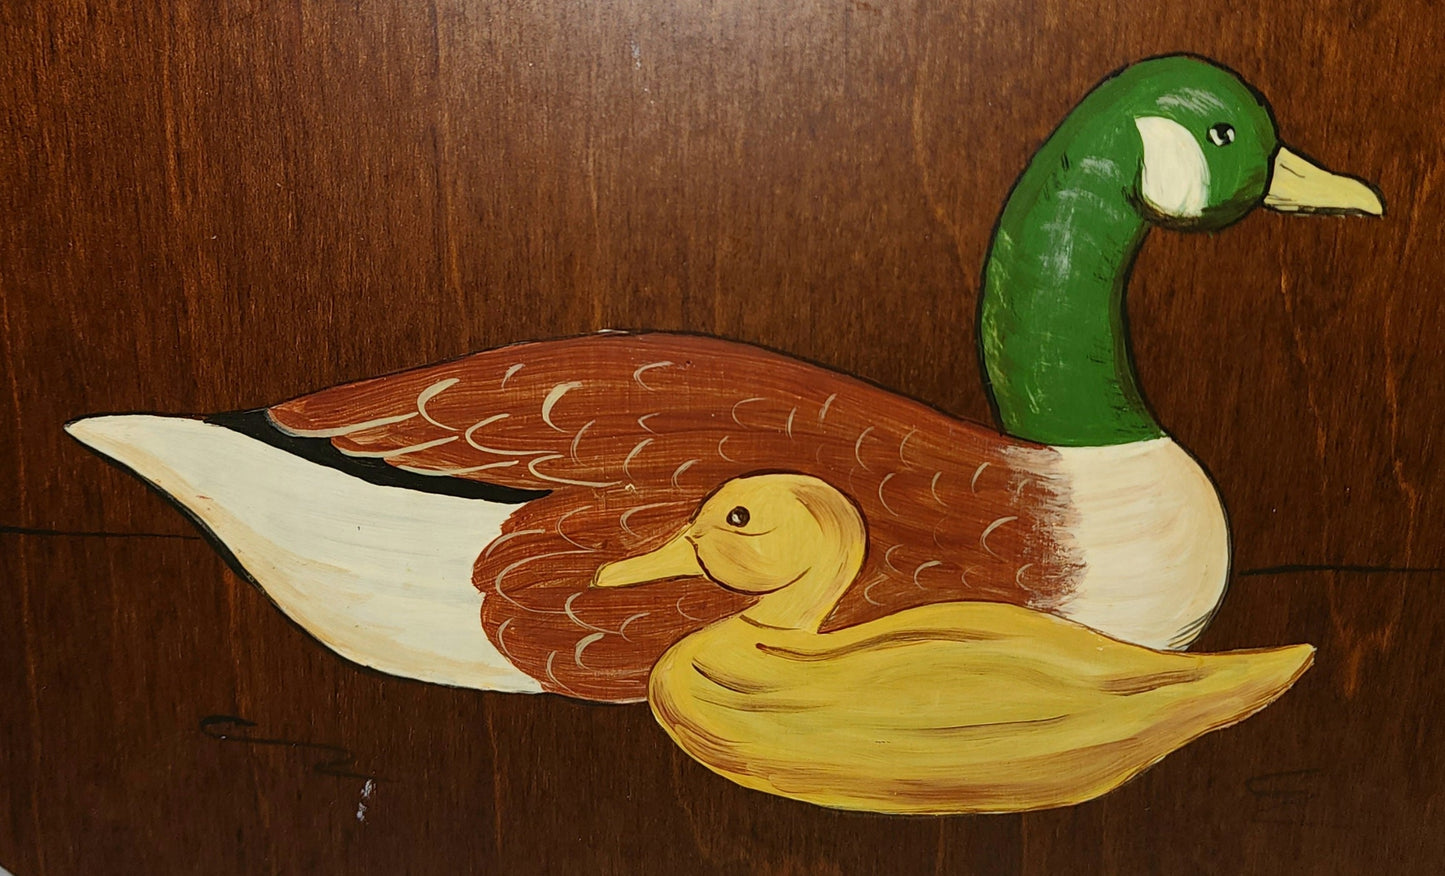 Unique Vintage Purse 1970s 80s Round Wood Leather Purse Painted Ducks de Lanthe Creations Preppy Boho Hippie